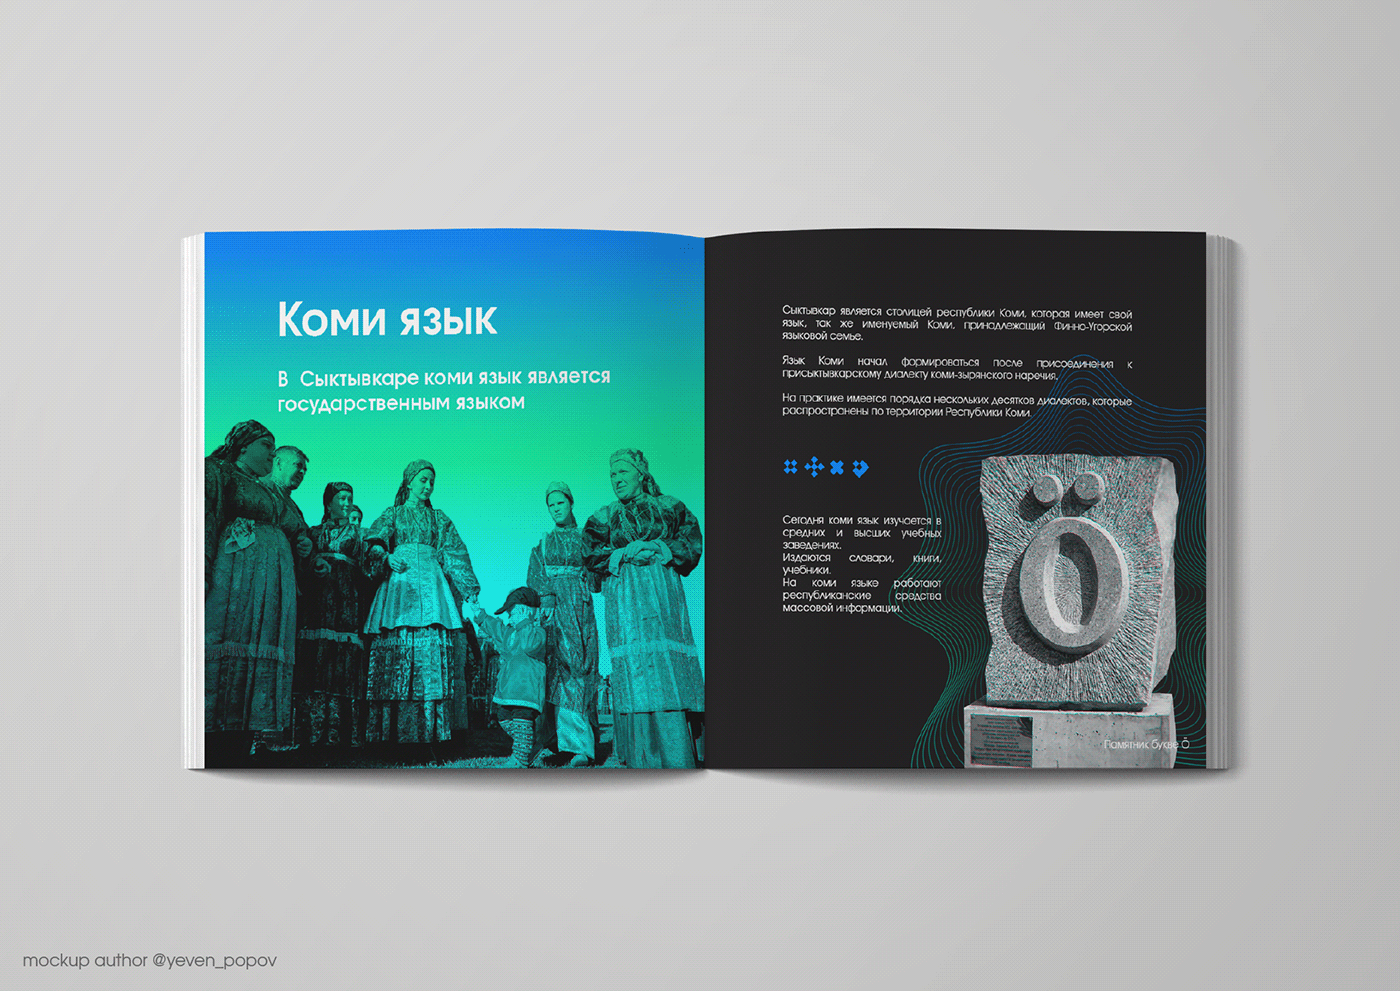 Коми орнамент город Magazine design Russia дизайн журнала сыктывкар